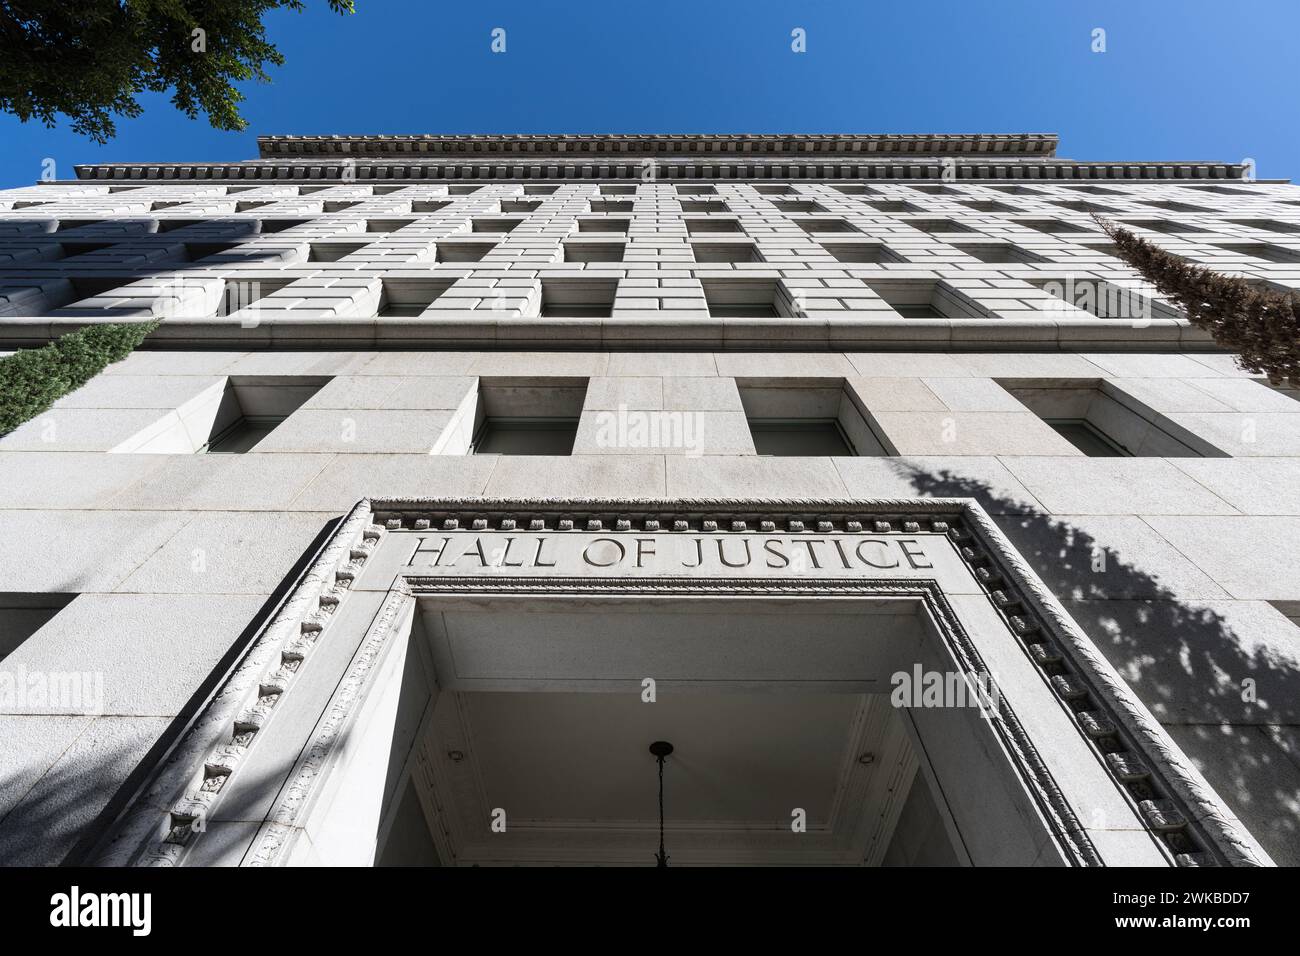 Vue vers le haut de l'édifice historique Hall of Justice et panneau dans le centre-ville DE LOS ANGELES. L'ancien palais de justice est actuellement un bureau du gouvernement du comté de Los Angeles b Banque D'Images